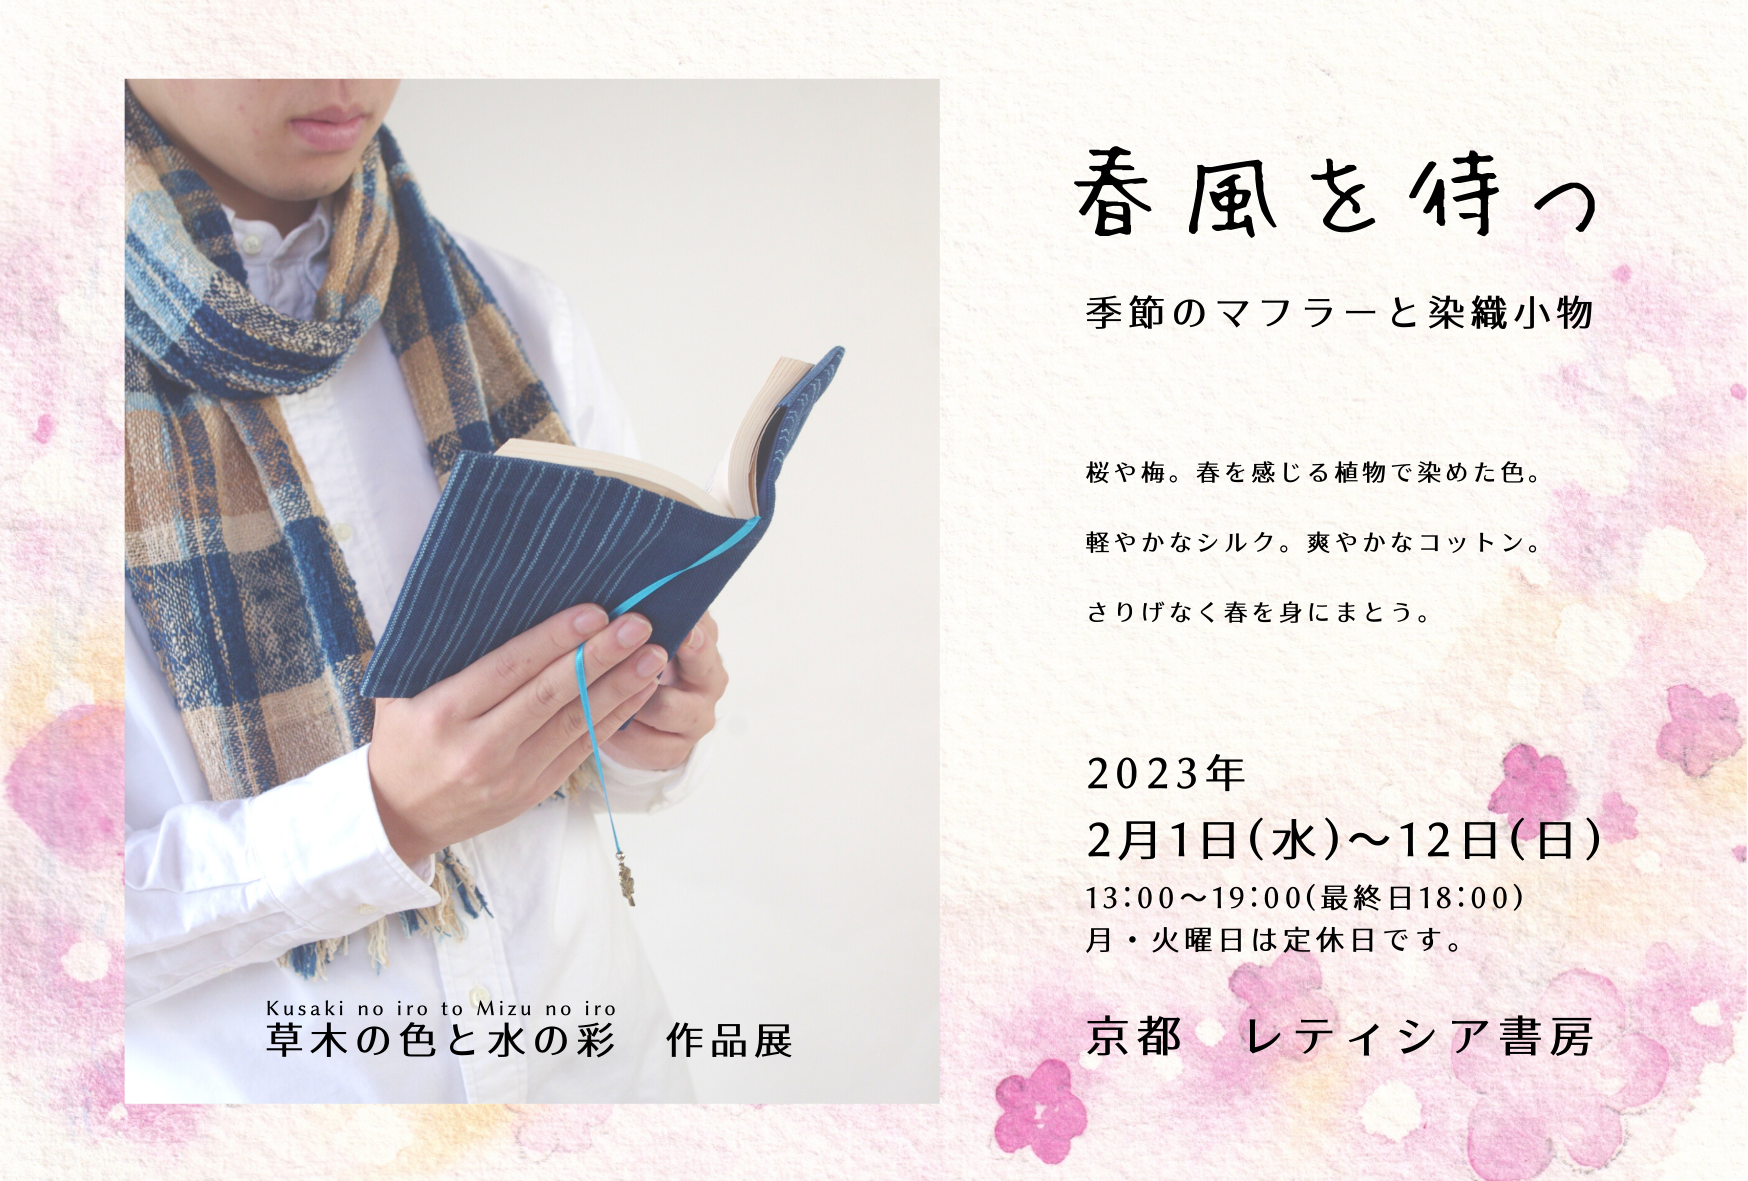 2023年2月1日(水)〜12日(日)、京都のレティシア書房で作品展をいたします。